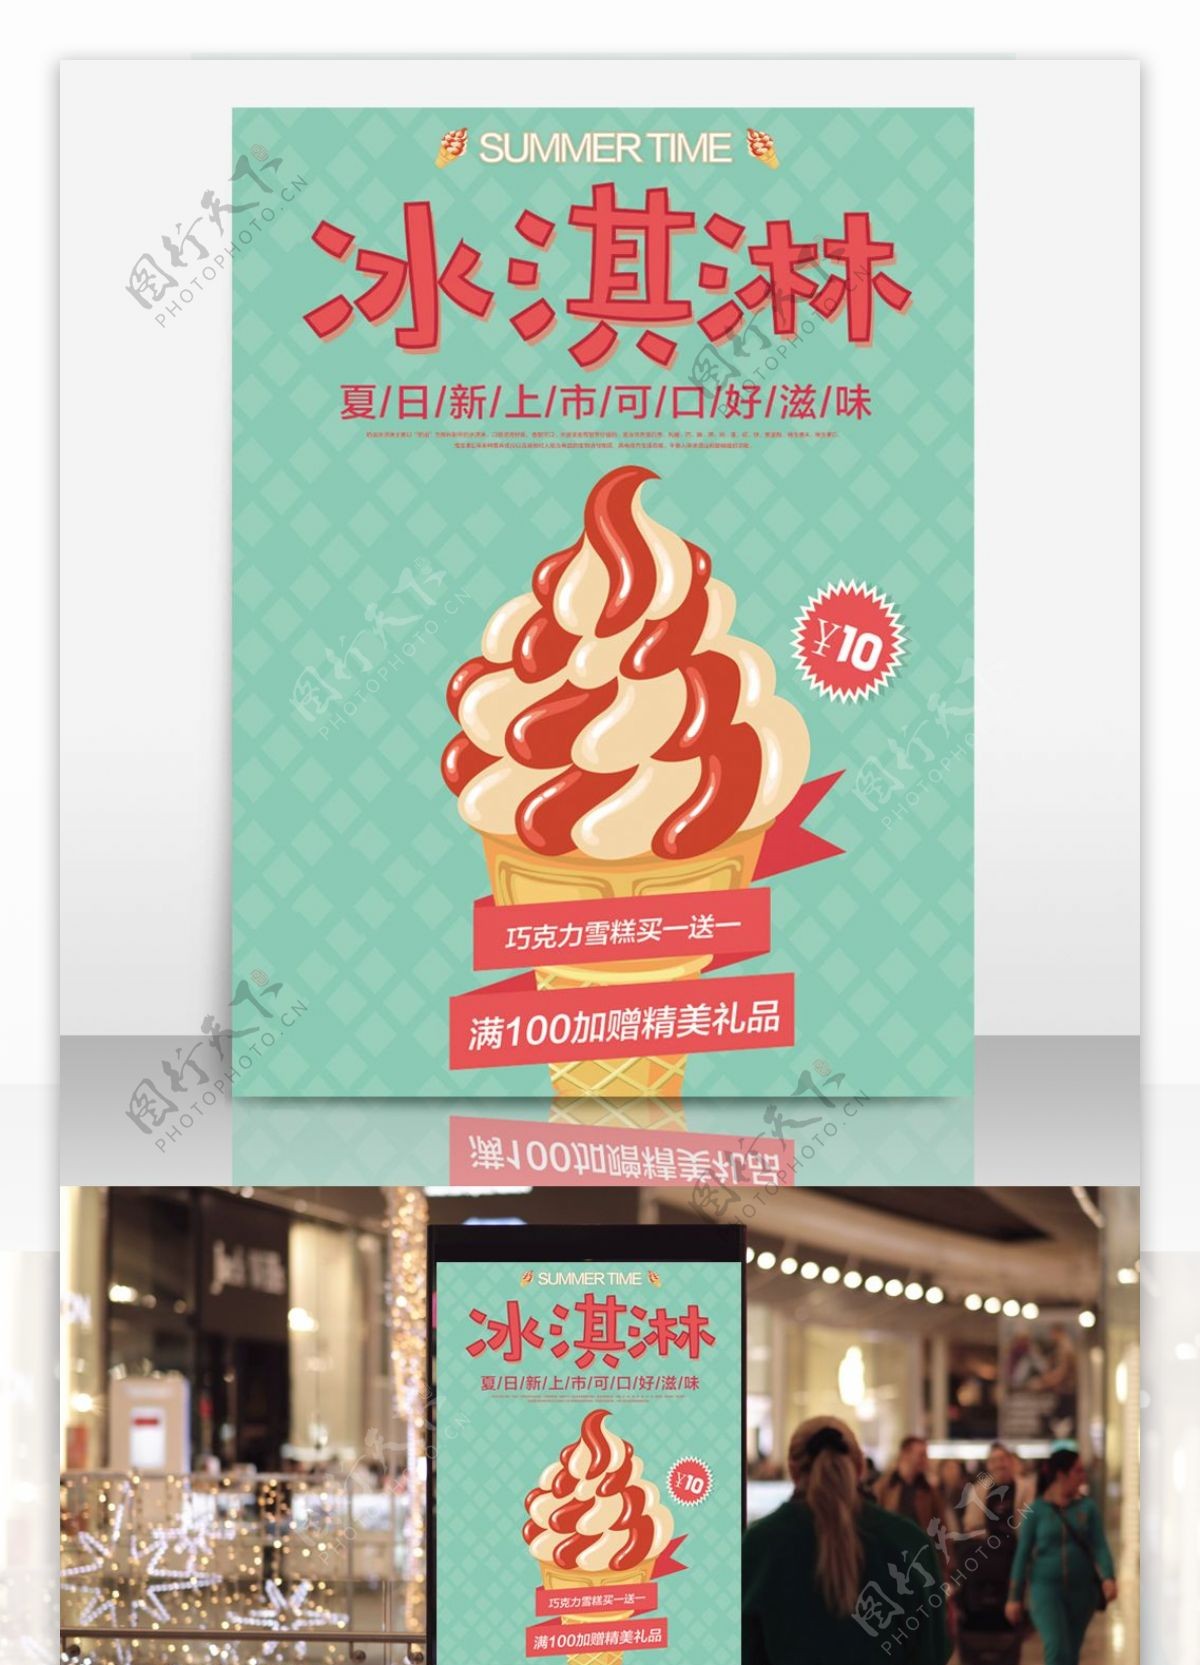 卡通矢量冰淇淋10元促销甜品店宣传海报